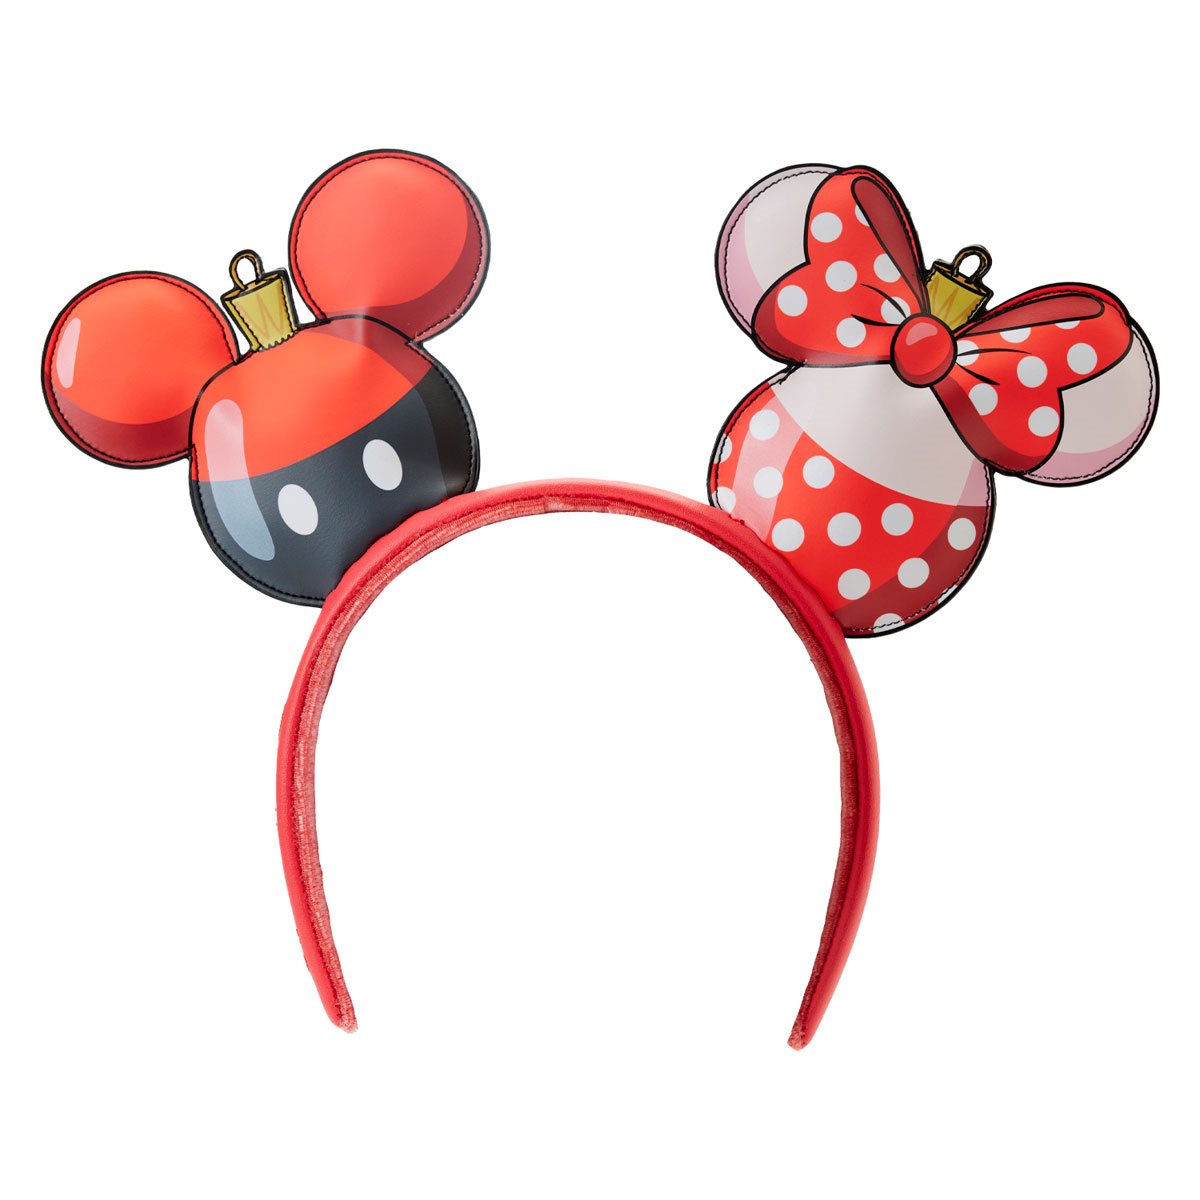 Mickey X Louis V Minnie Ears, Crystal Minnie Ears, Face Mask